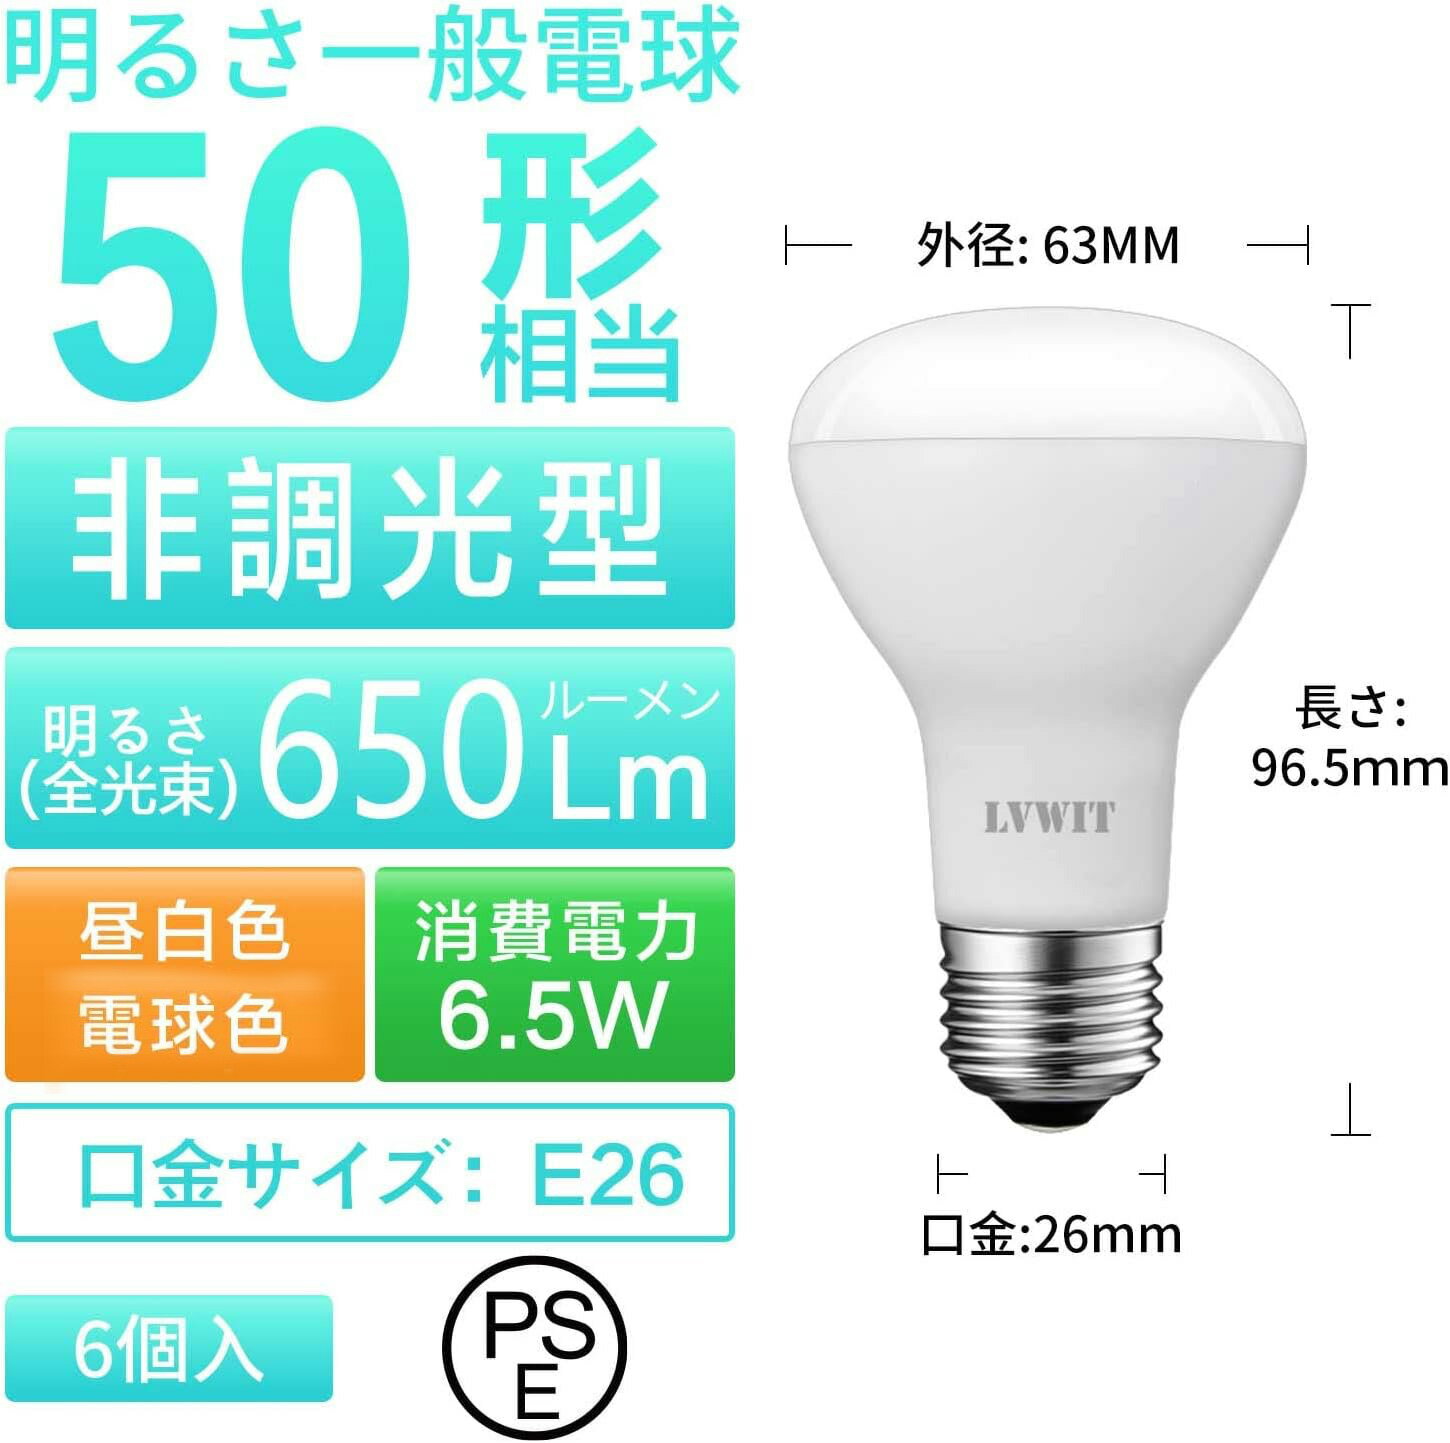 LED電球 E26口金 レフランプ形 消費電力6.5W 電球色 3000K 昼白色 5000K 650LM 50W形相当 レフ電球 下方向 PSE認証済 6個入